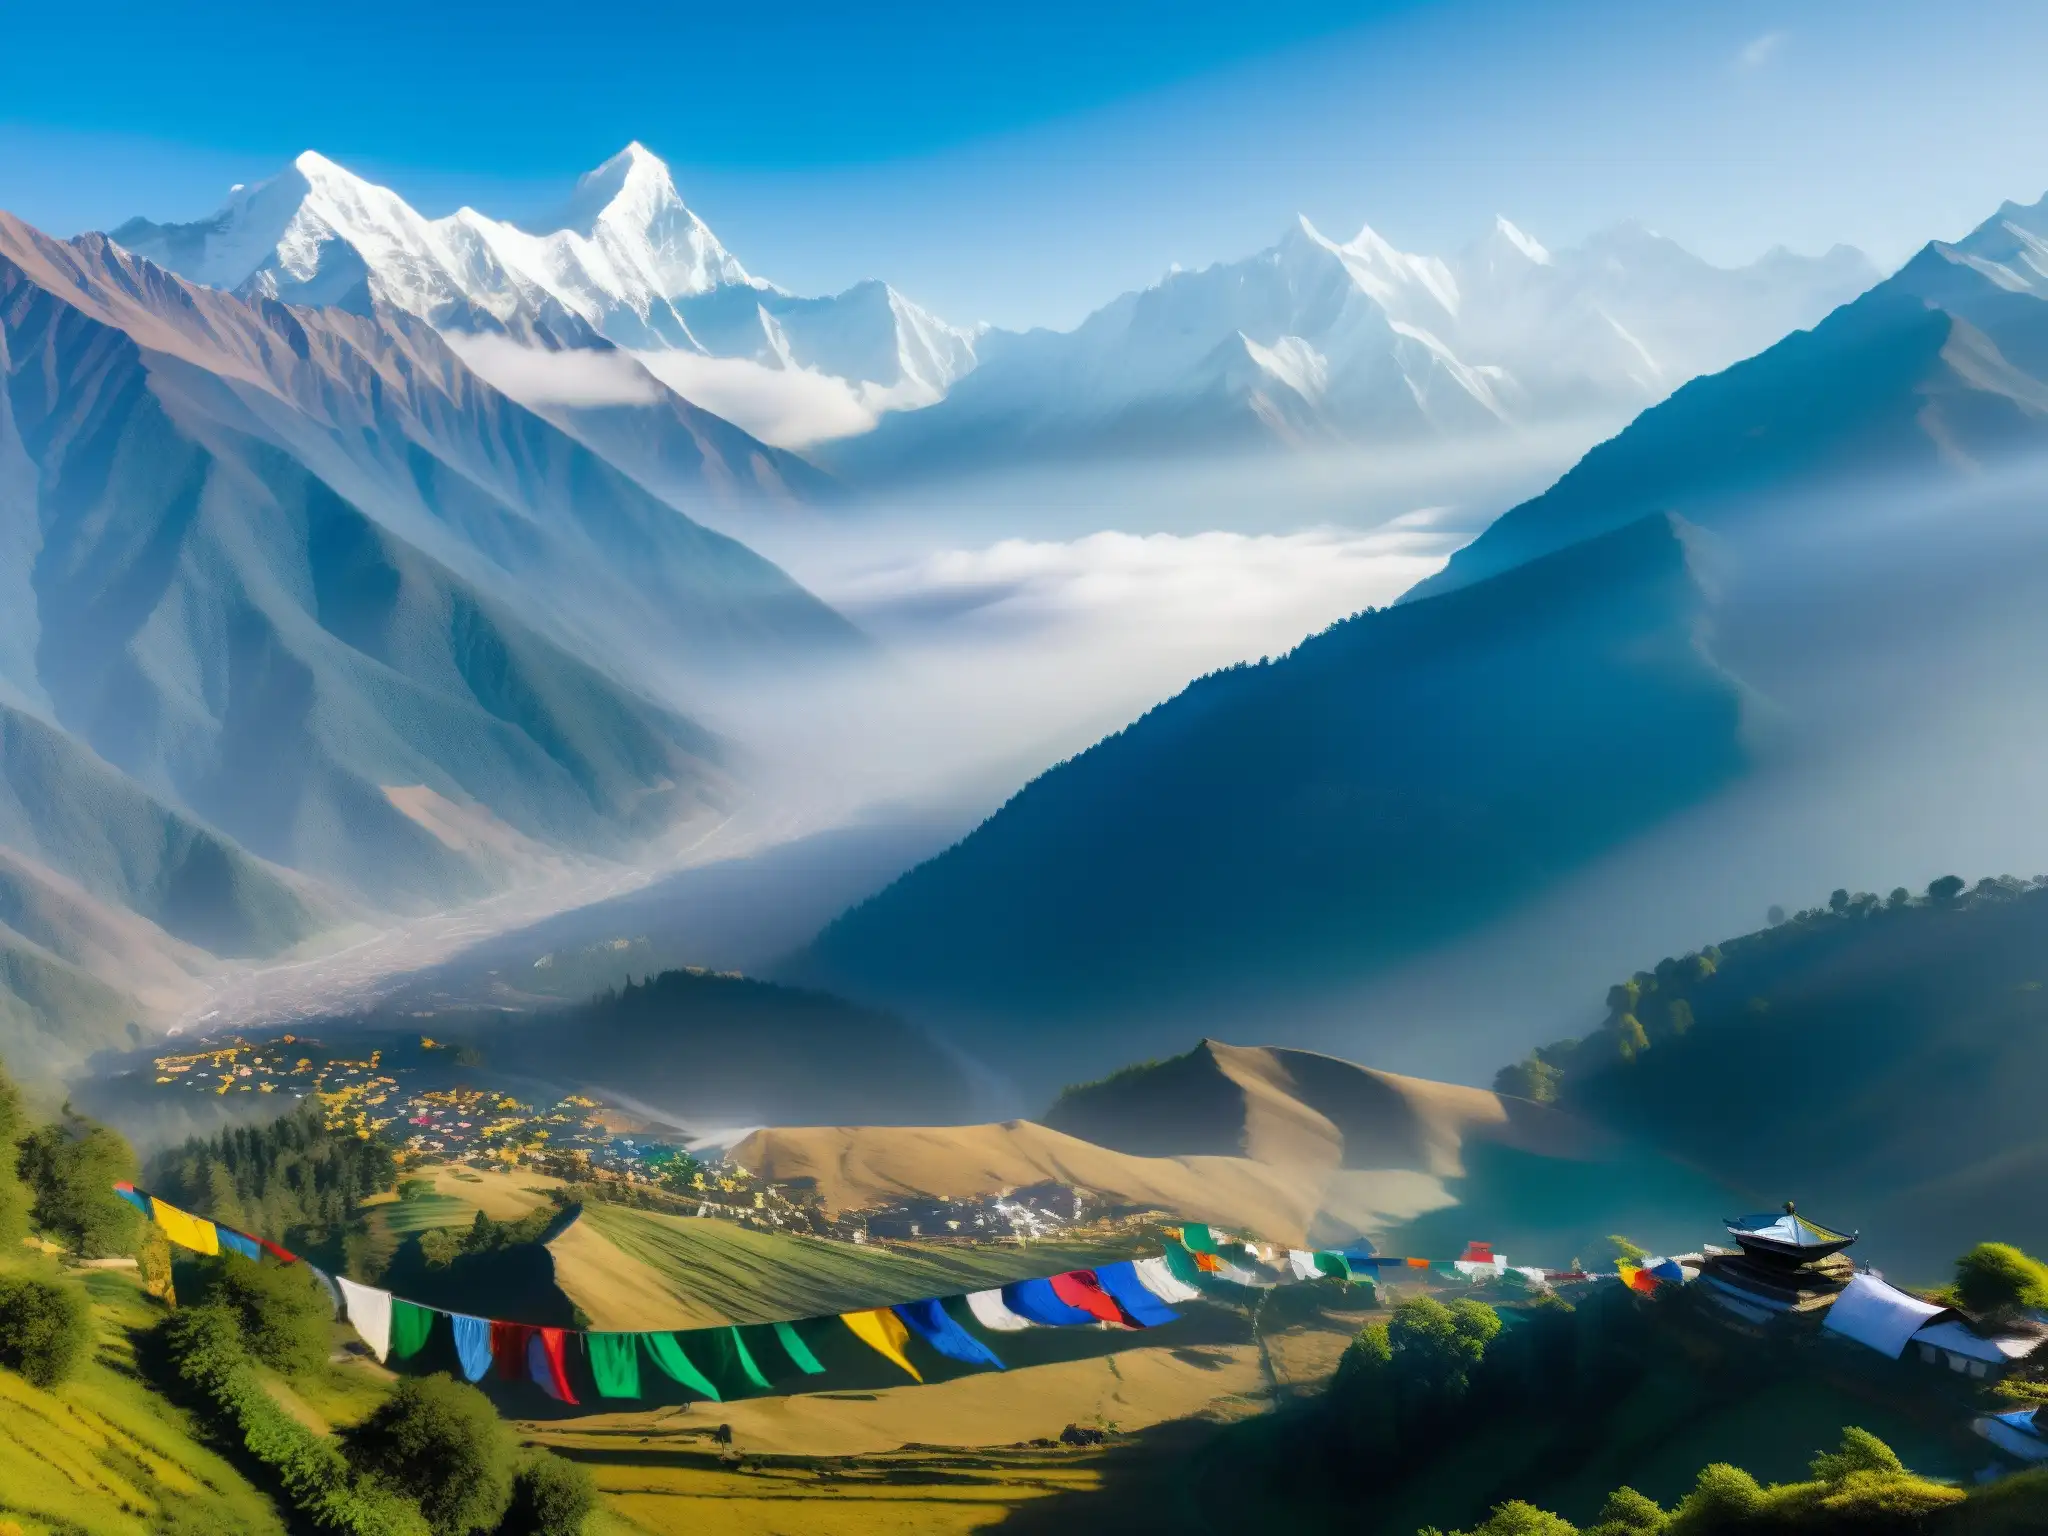 Vista aérea de los imponentes Himalayas, envueltos en niebla y rodeados de coloridas banderas de oración